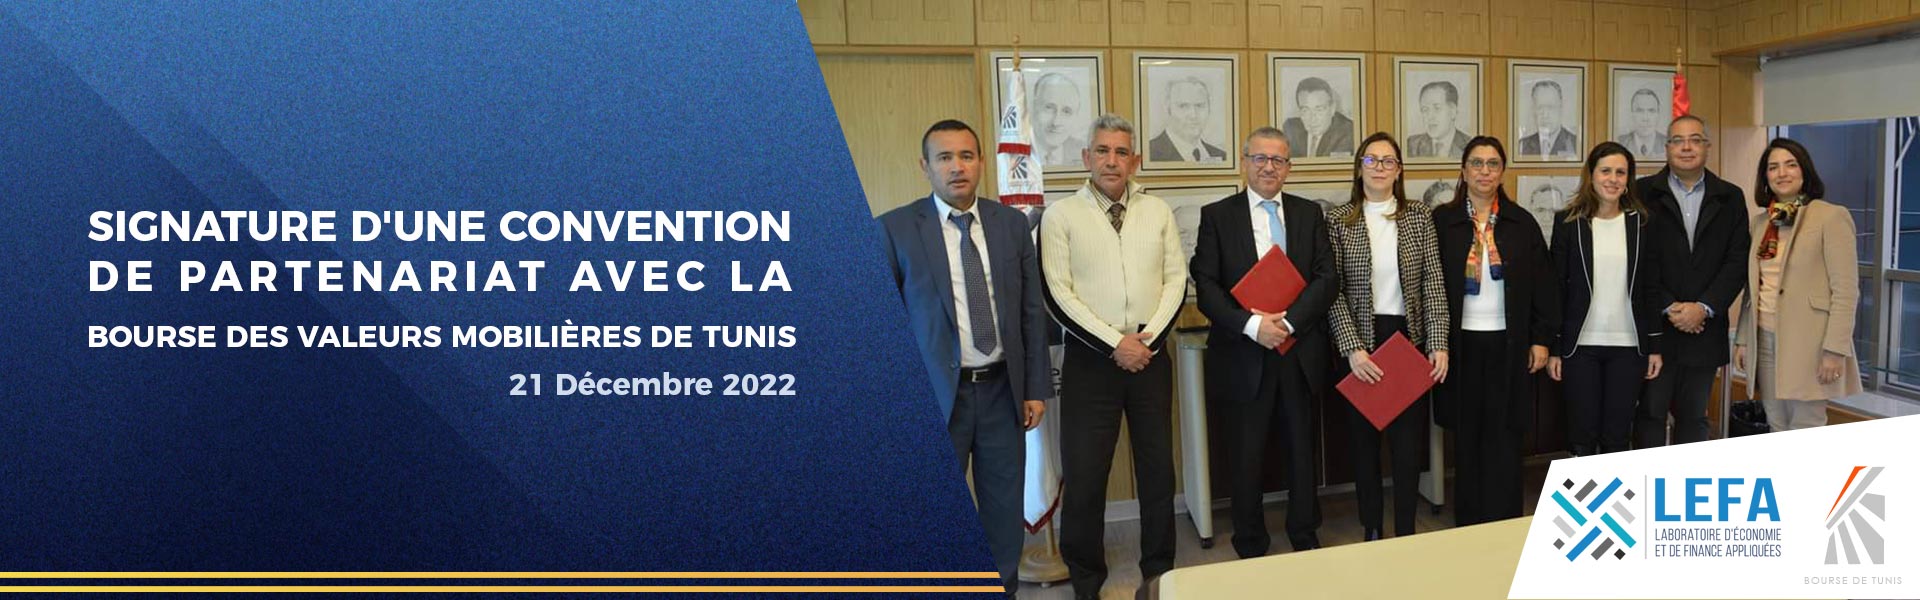 Signature d'une Convention  de partenariat avec la  Bourse des Valeurs Mobilières de Tunis